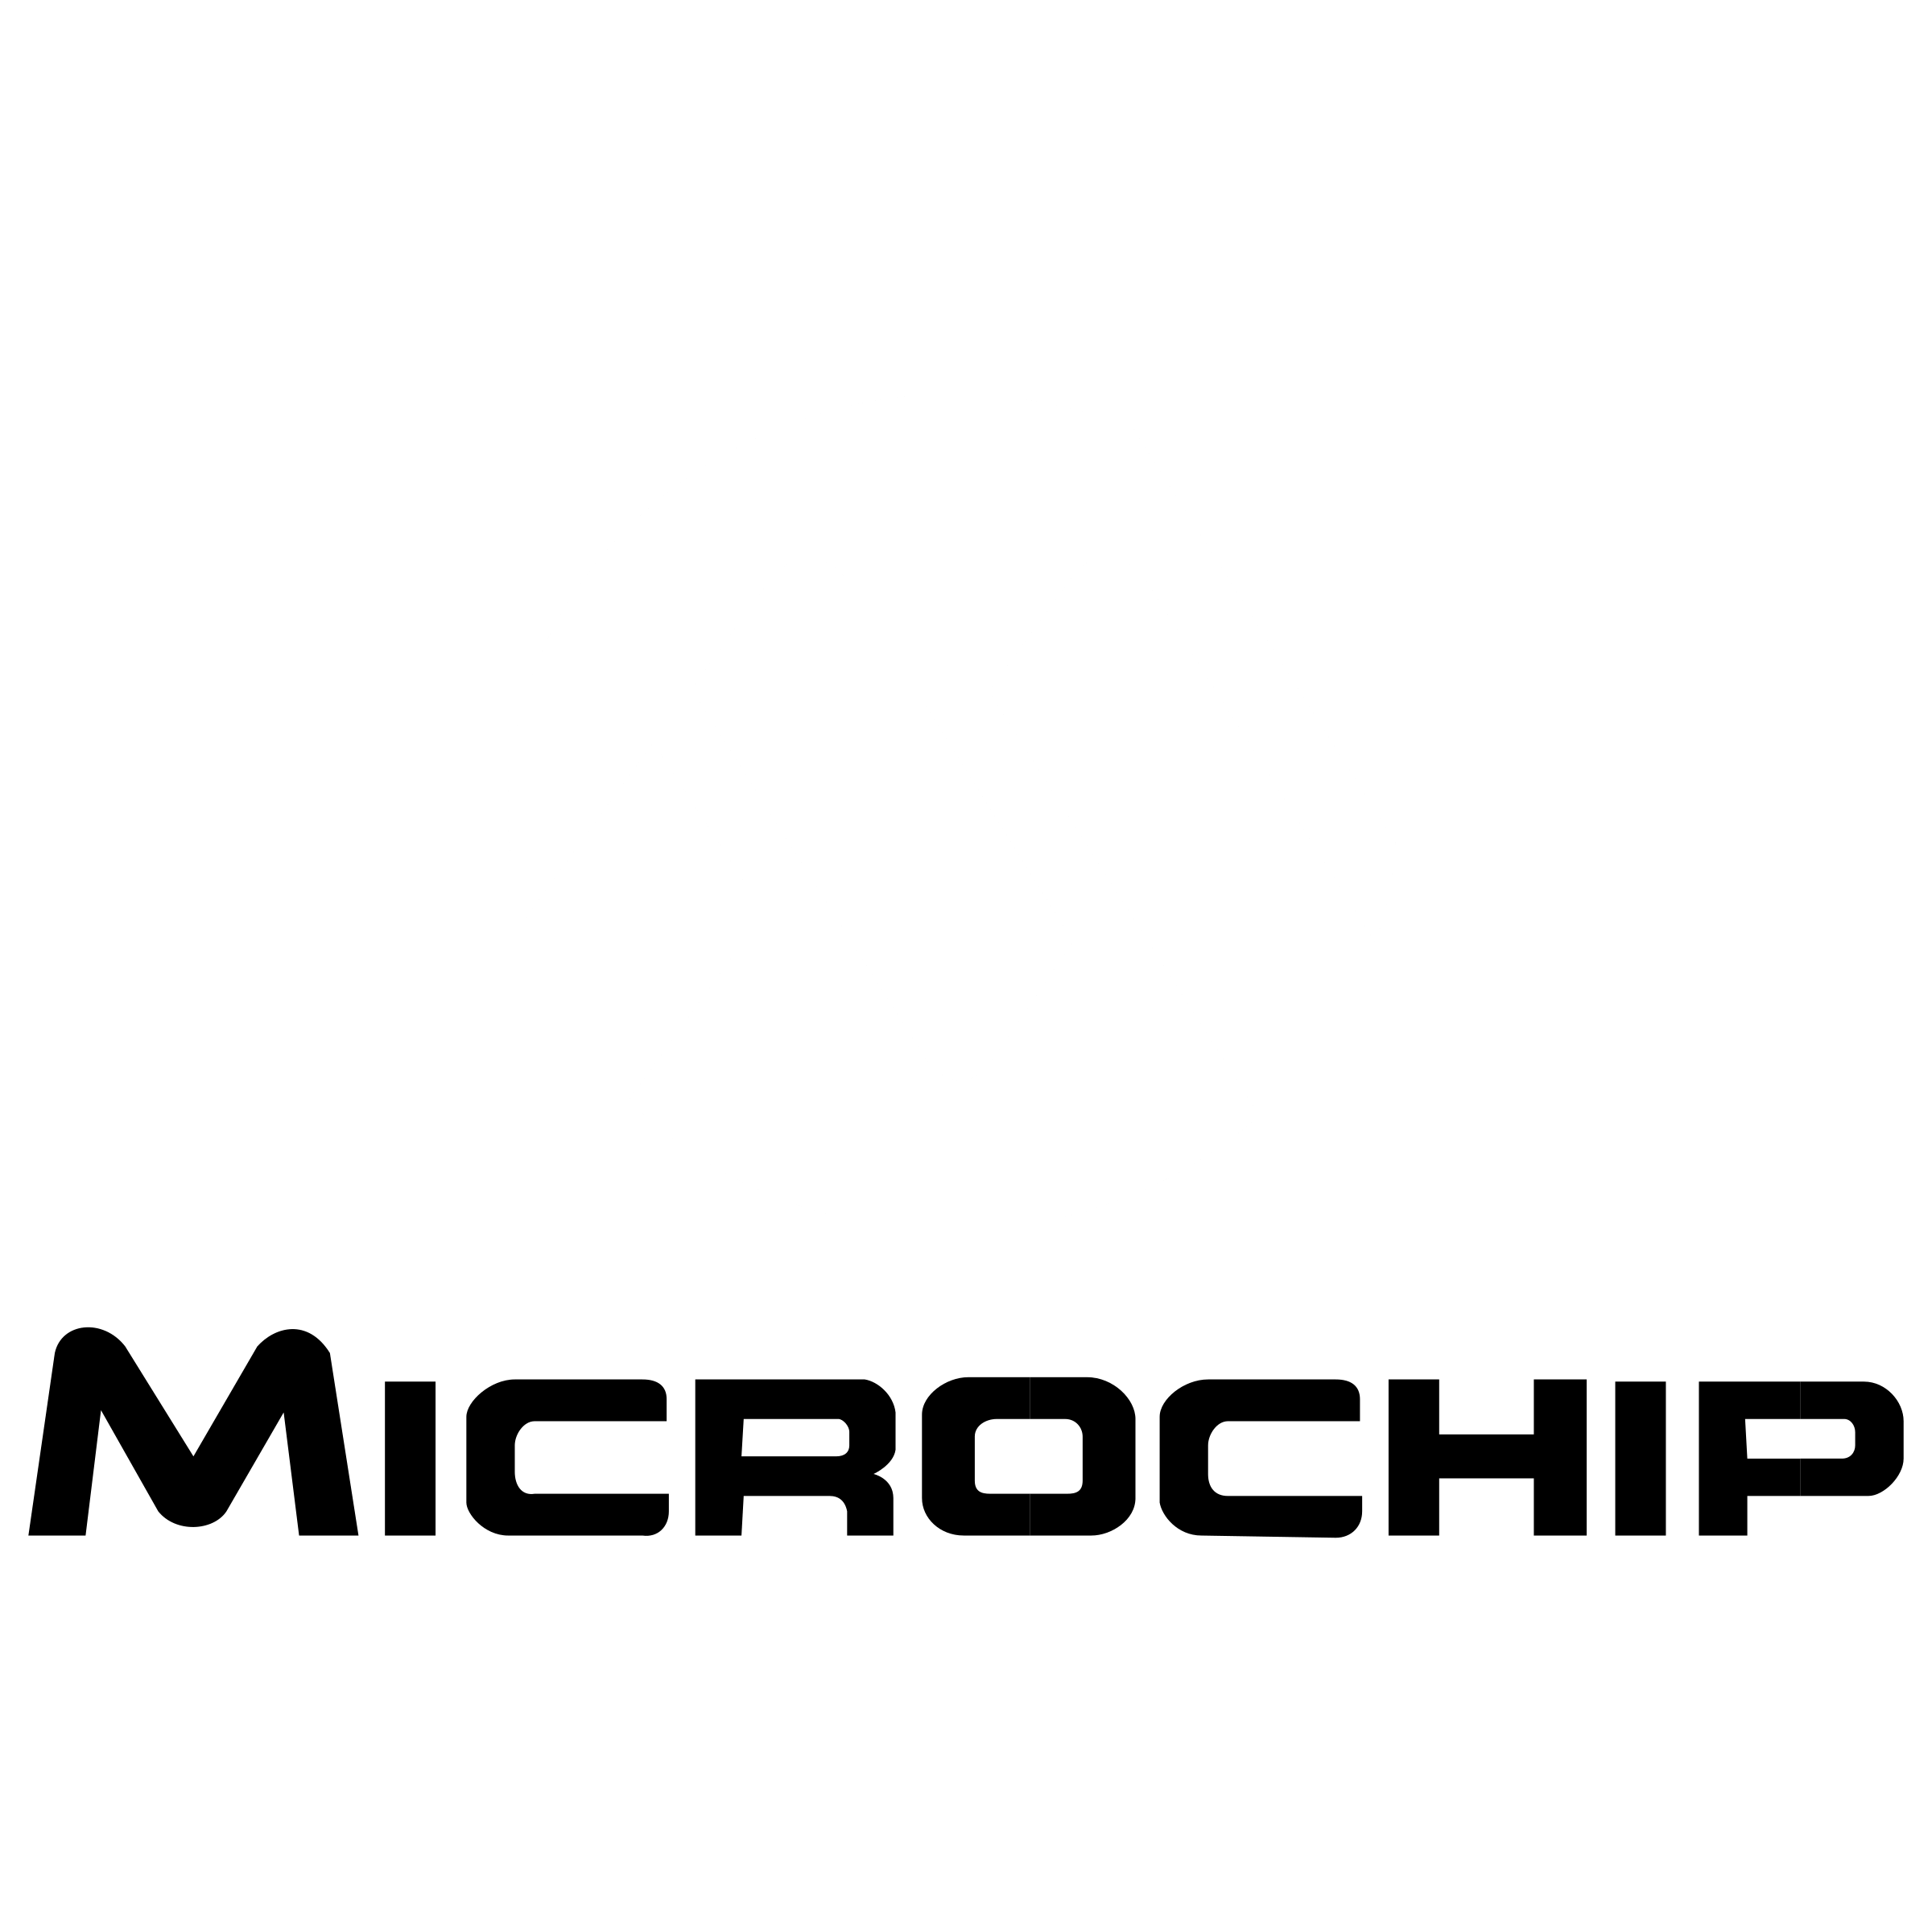 Microchip Logo - Microchip Logo PNG Transparent & SVG Vector